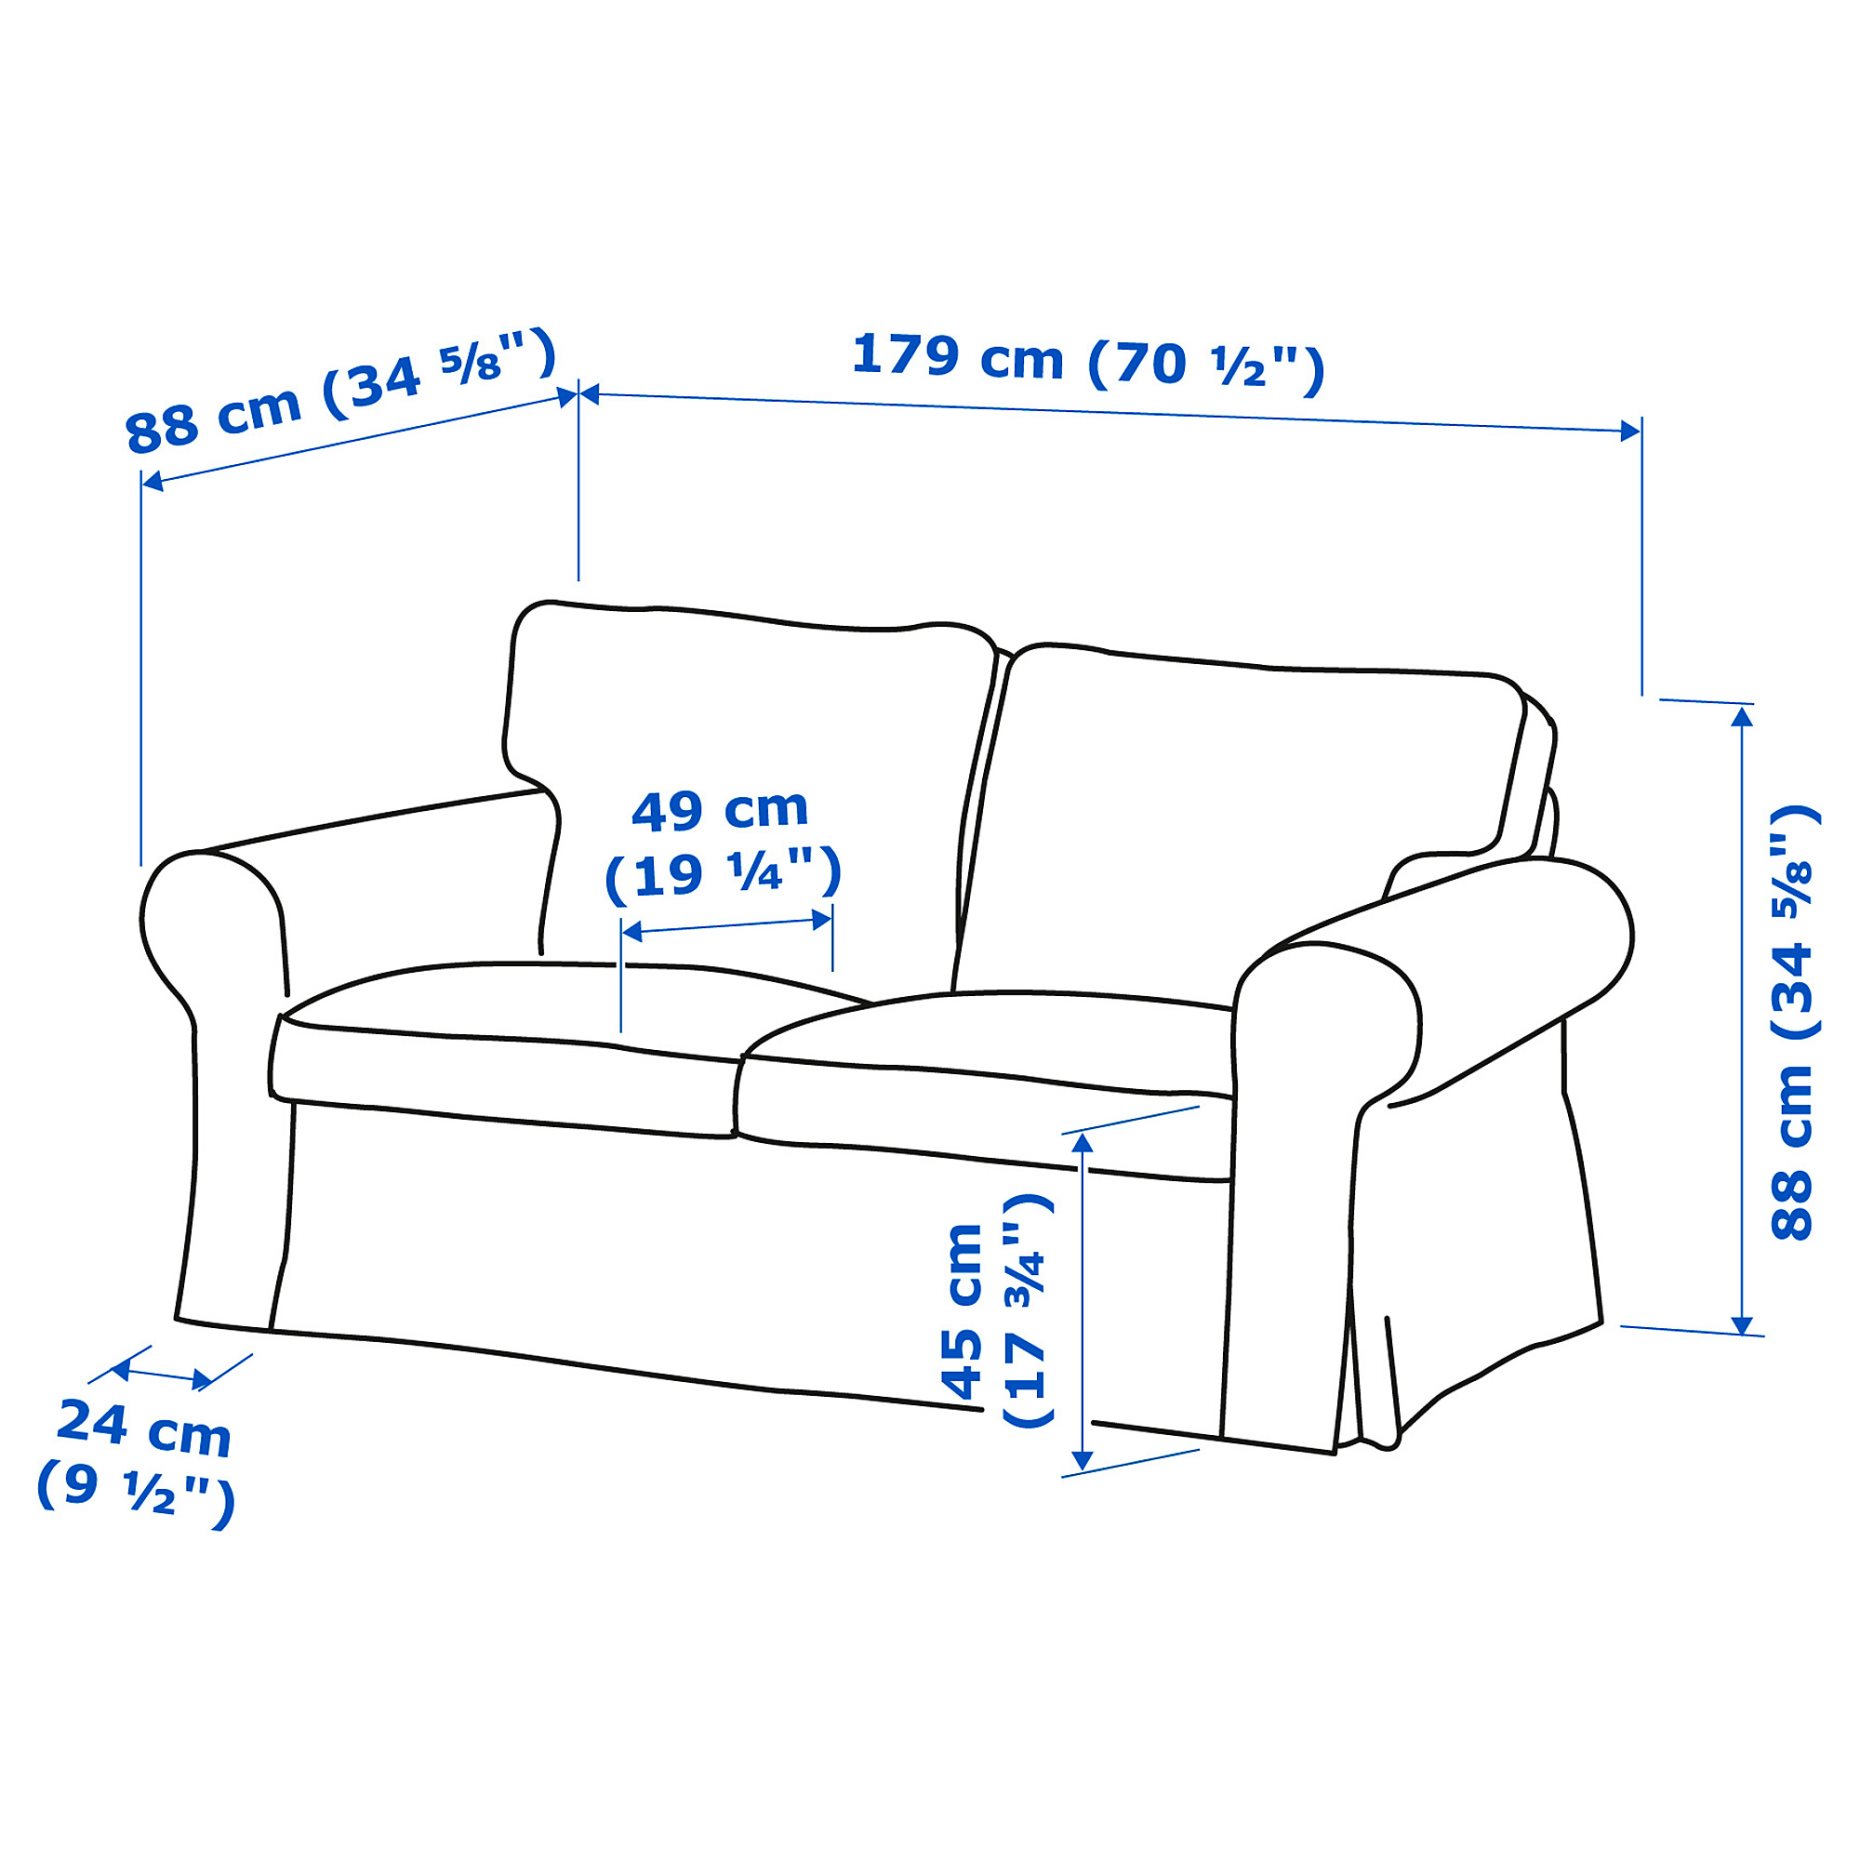 EKTORP, 2-seat sofa, 495.090.25